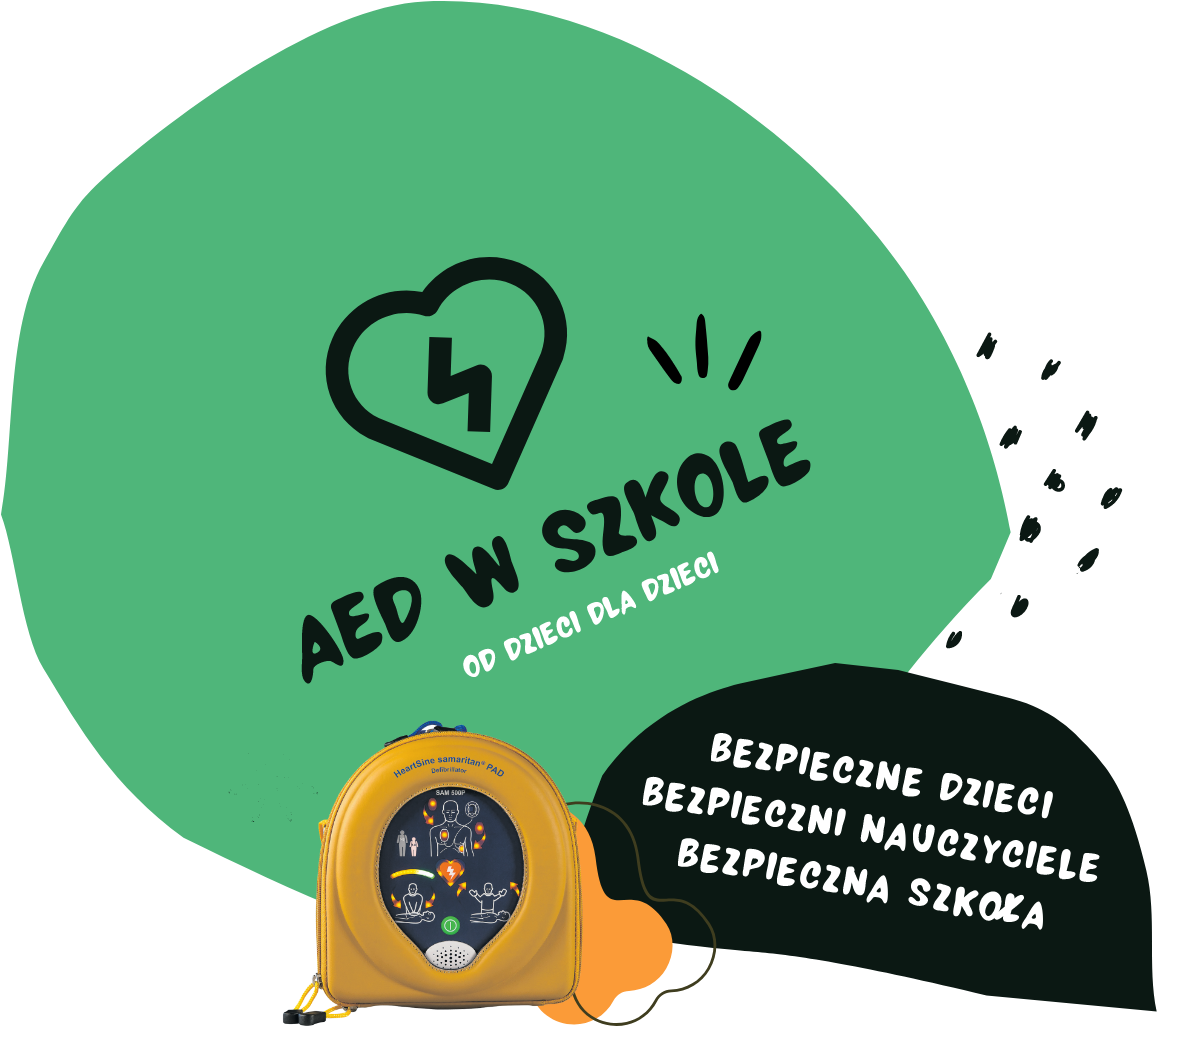 logo programu AED w szkole z hasłem od dzieci dla dzieci; grafika przedstawia defibrylator AED w żółtym futerale na tle zielonego kształtu serca z ikoną pioruna oraz wartości programu: bezpieczne dzieci, bezpieczni nauczyciele, bezpieczna szkoła